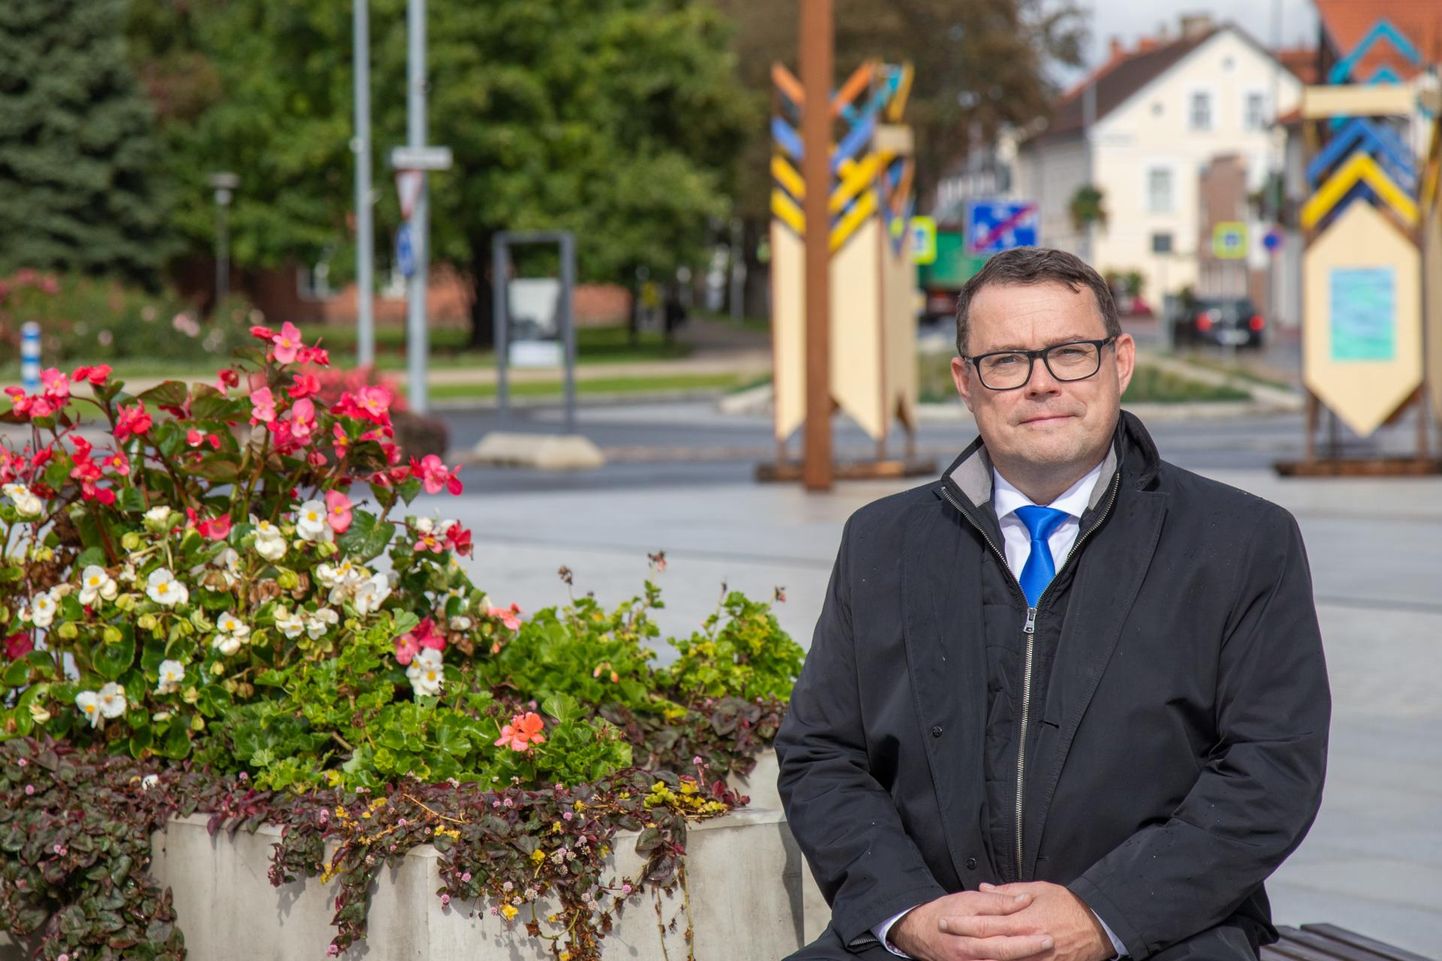 Reformierakonna nimekirjas kandideerib linnapeaks praegune meer Madis Timpson, kelle juhitava koalitsiooni suurimaks sammuks peavad ka paljud konkurendid Viljandi kesklinna rekonstrueerimist.